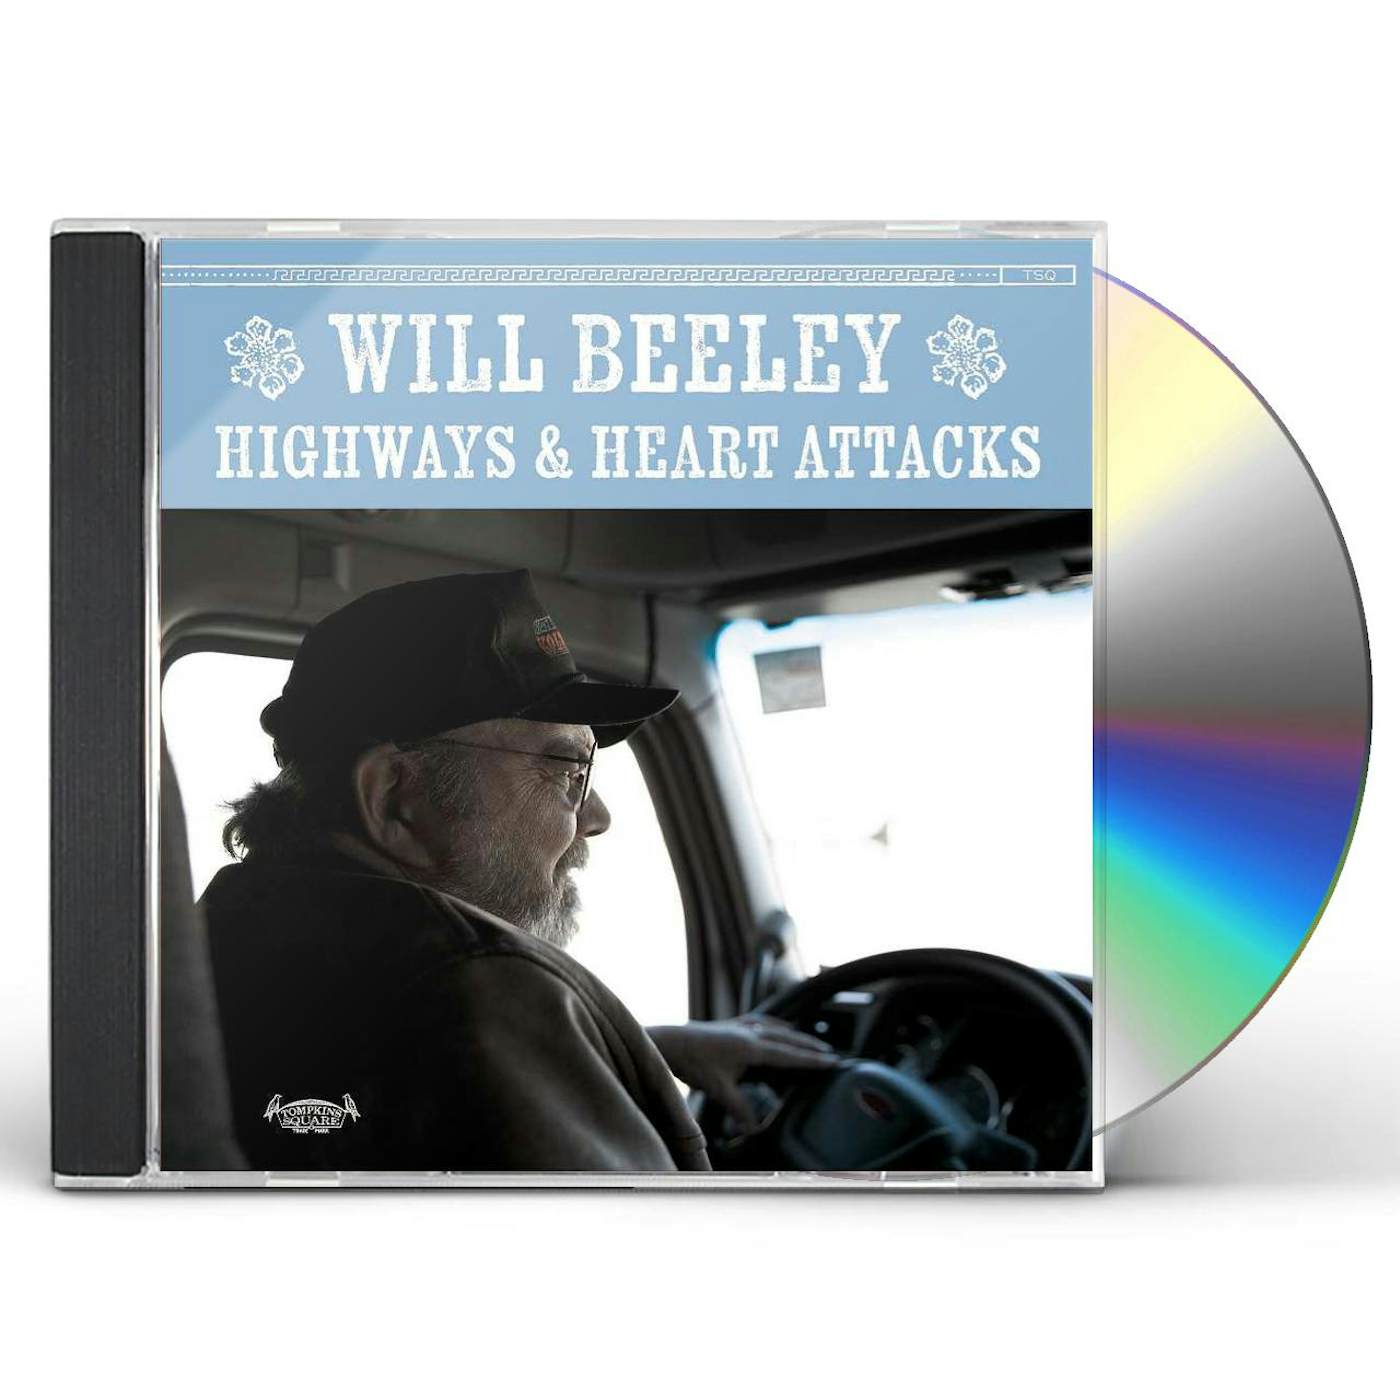 Will Beeley Highways & Heart Attacks CD